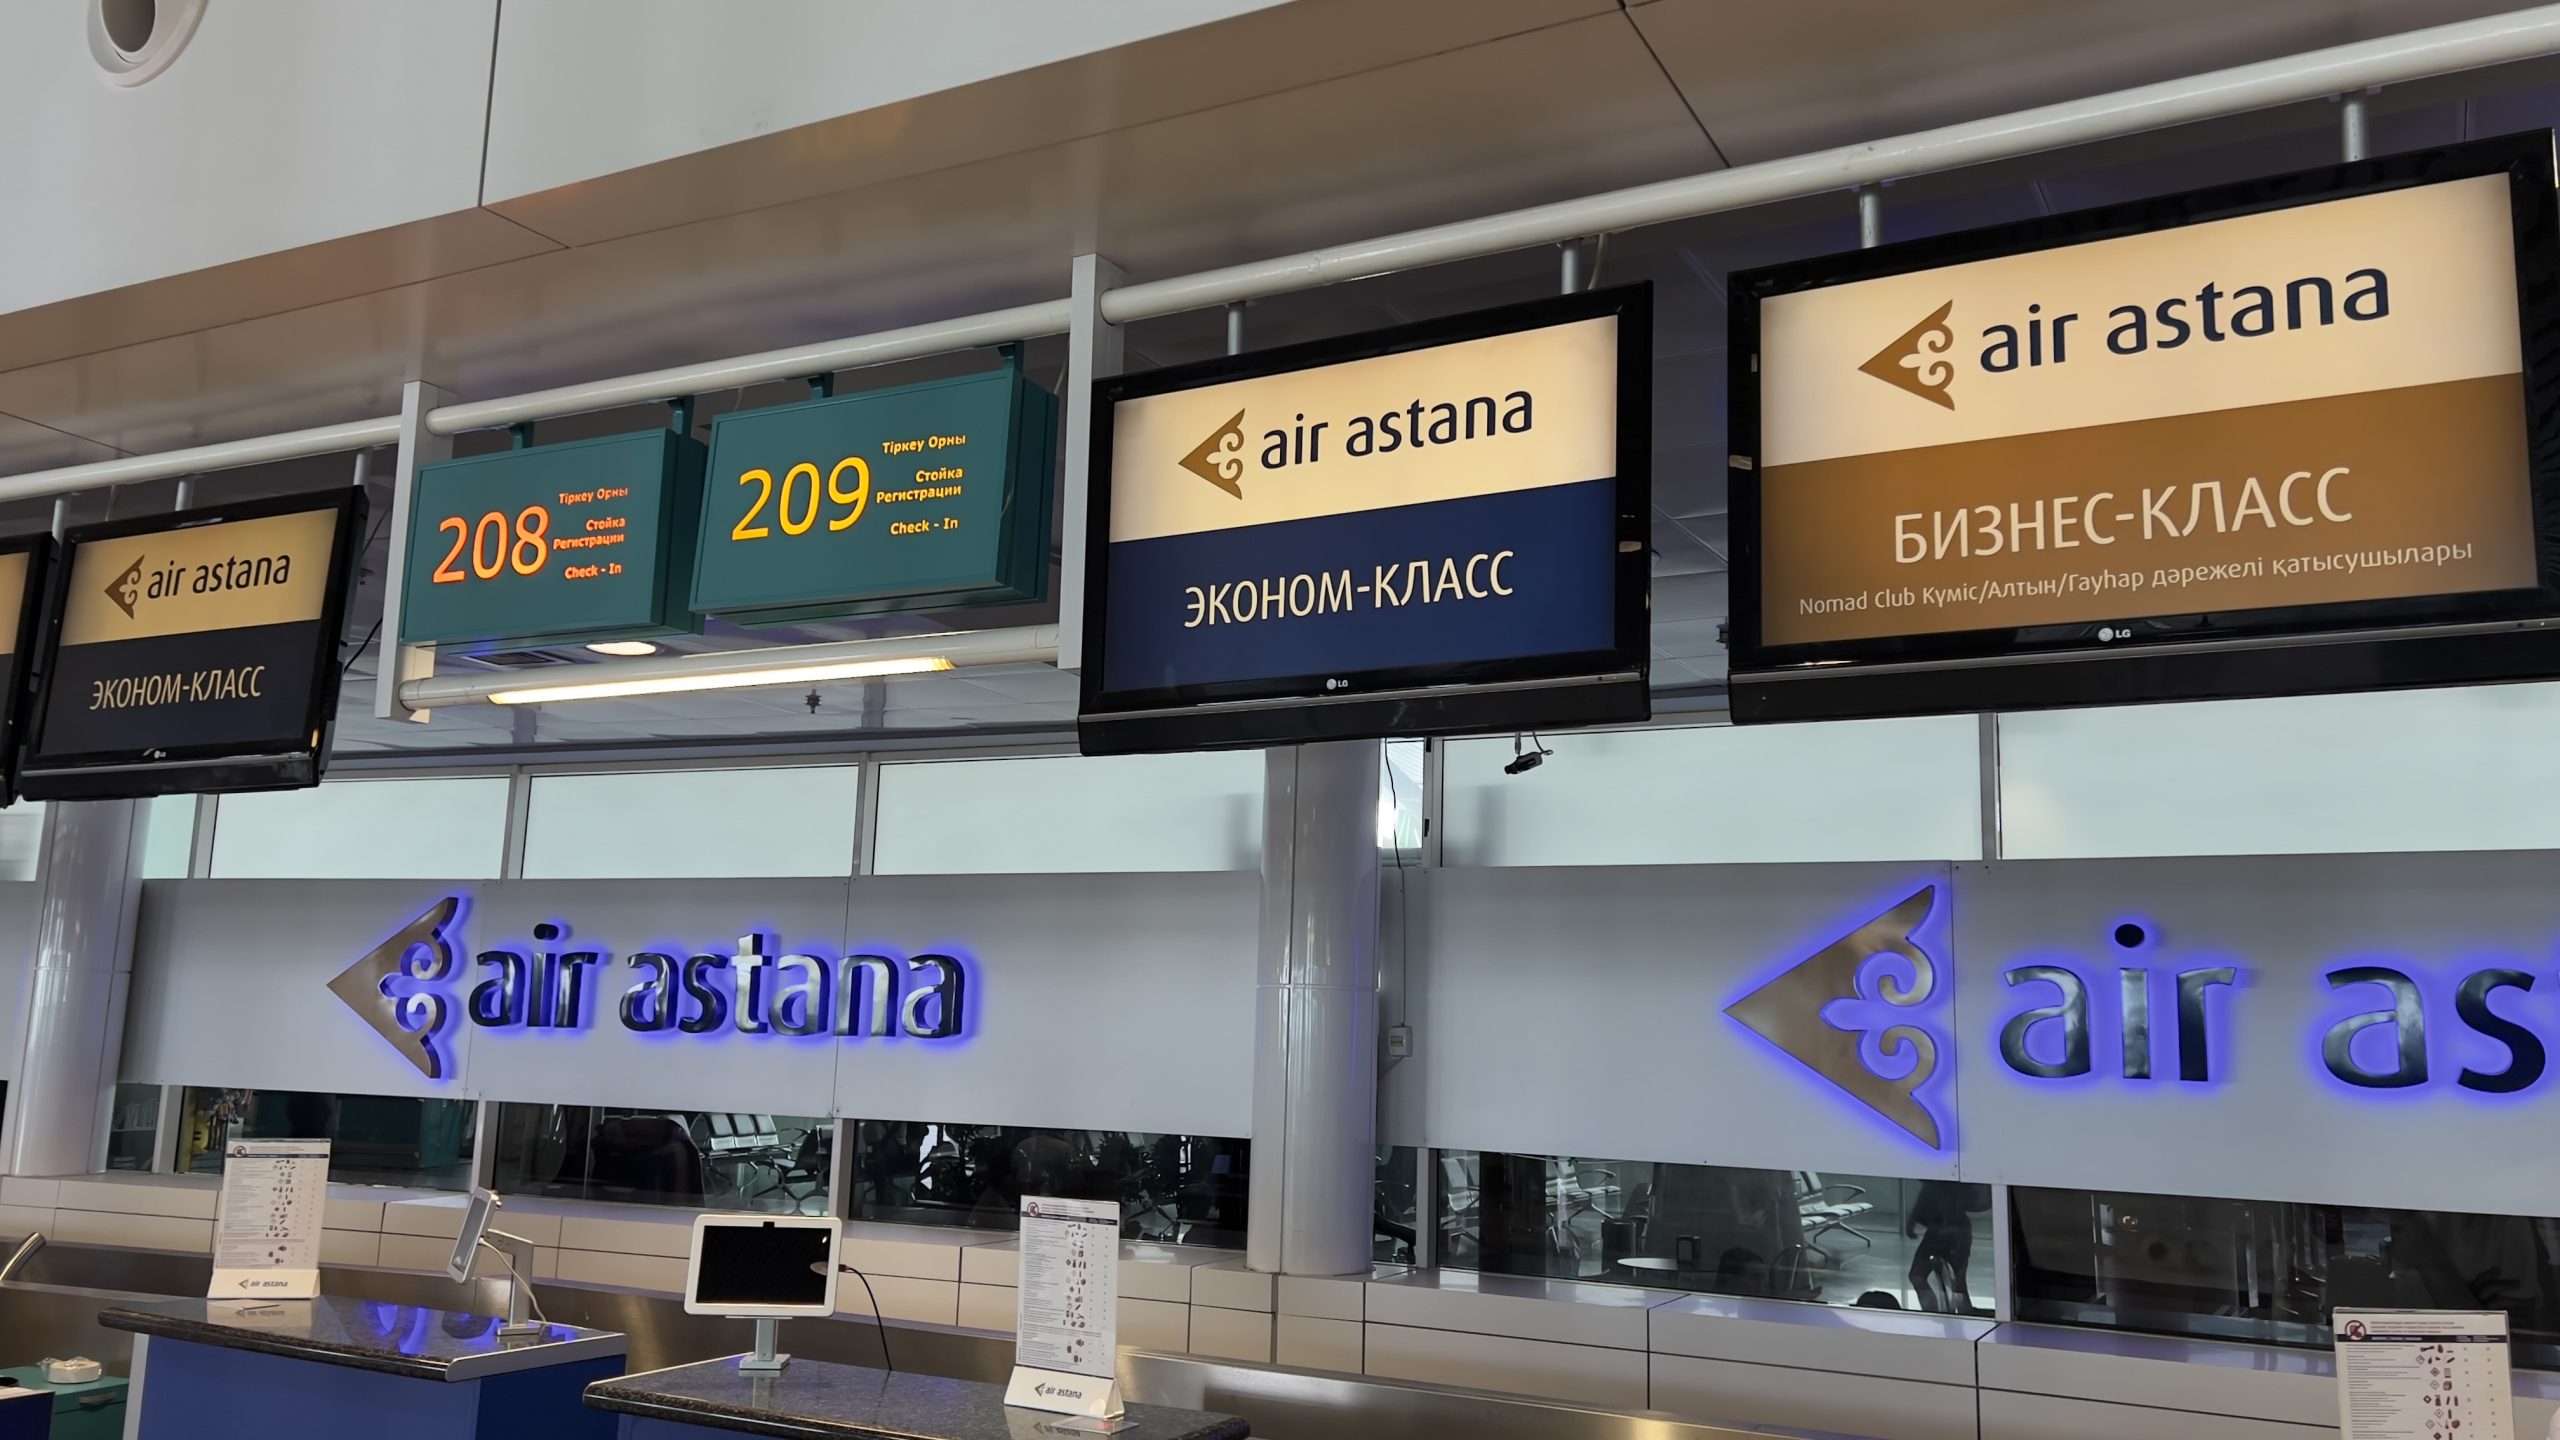 Air Astana Business Class von Nur-Sultan nach Almaty